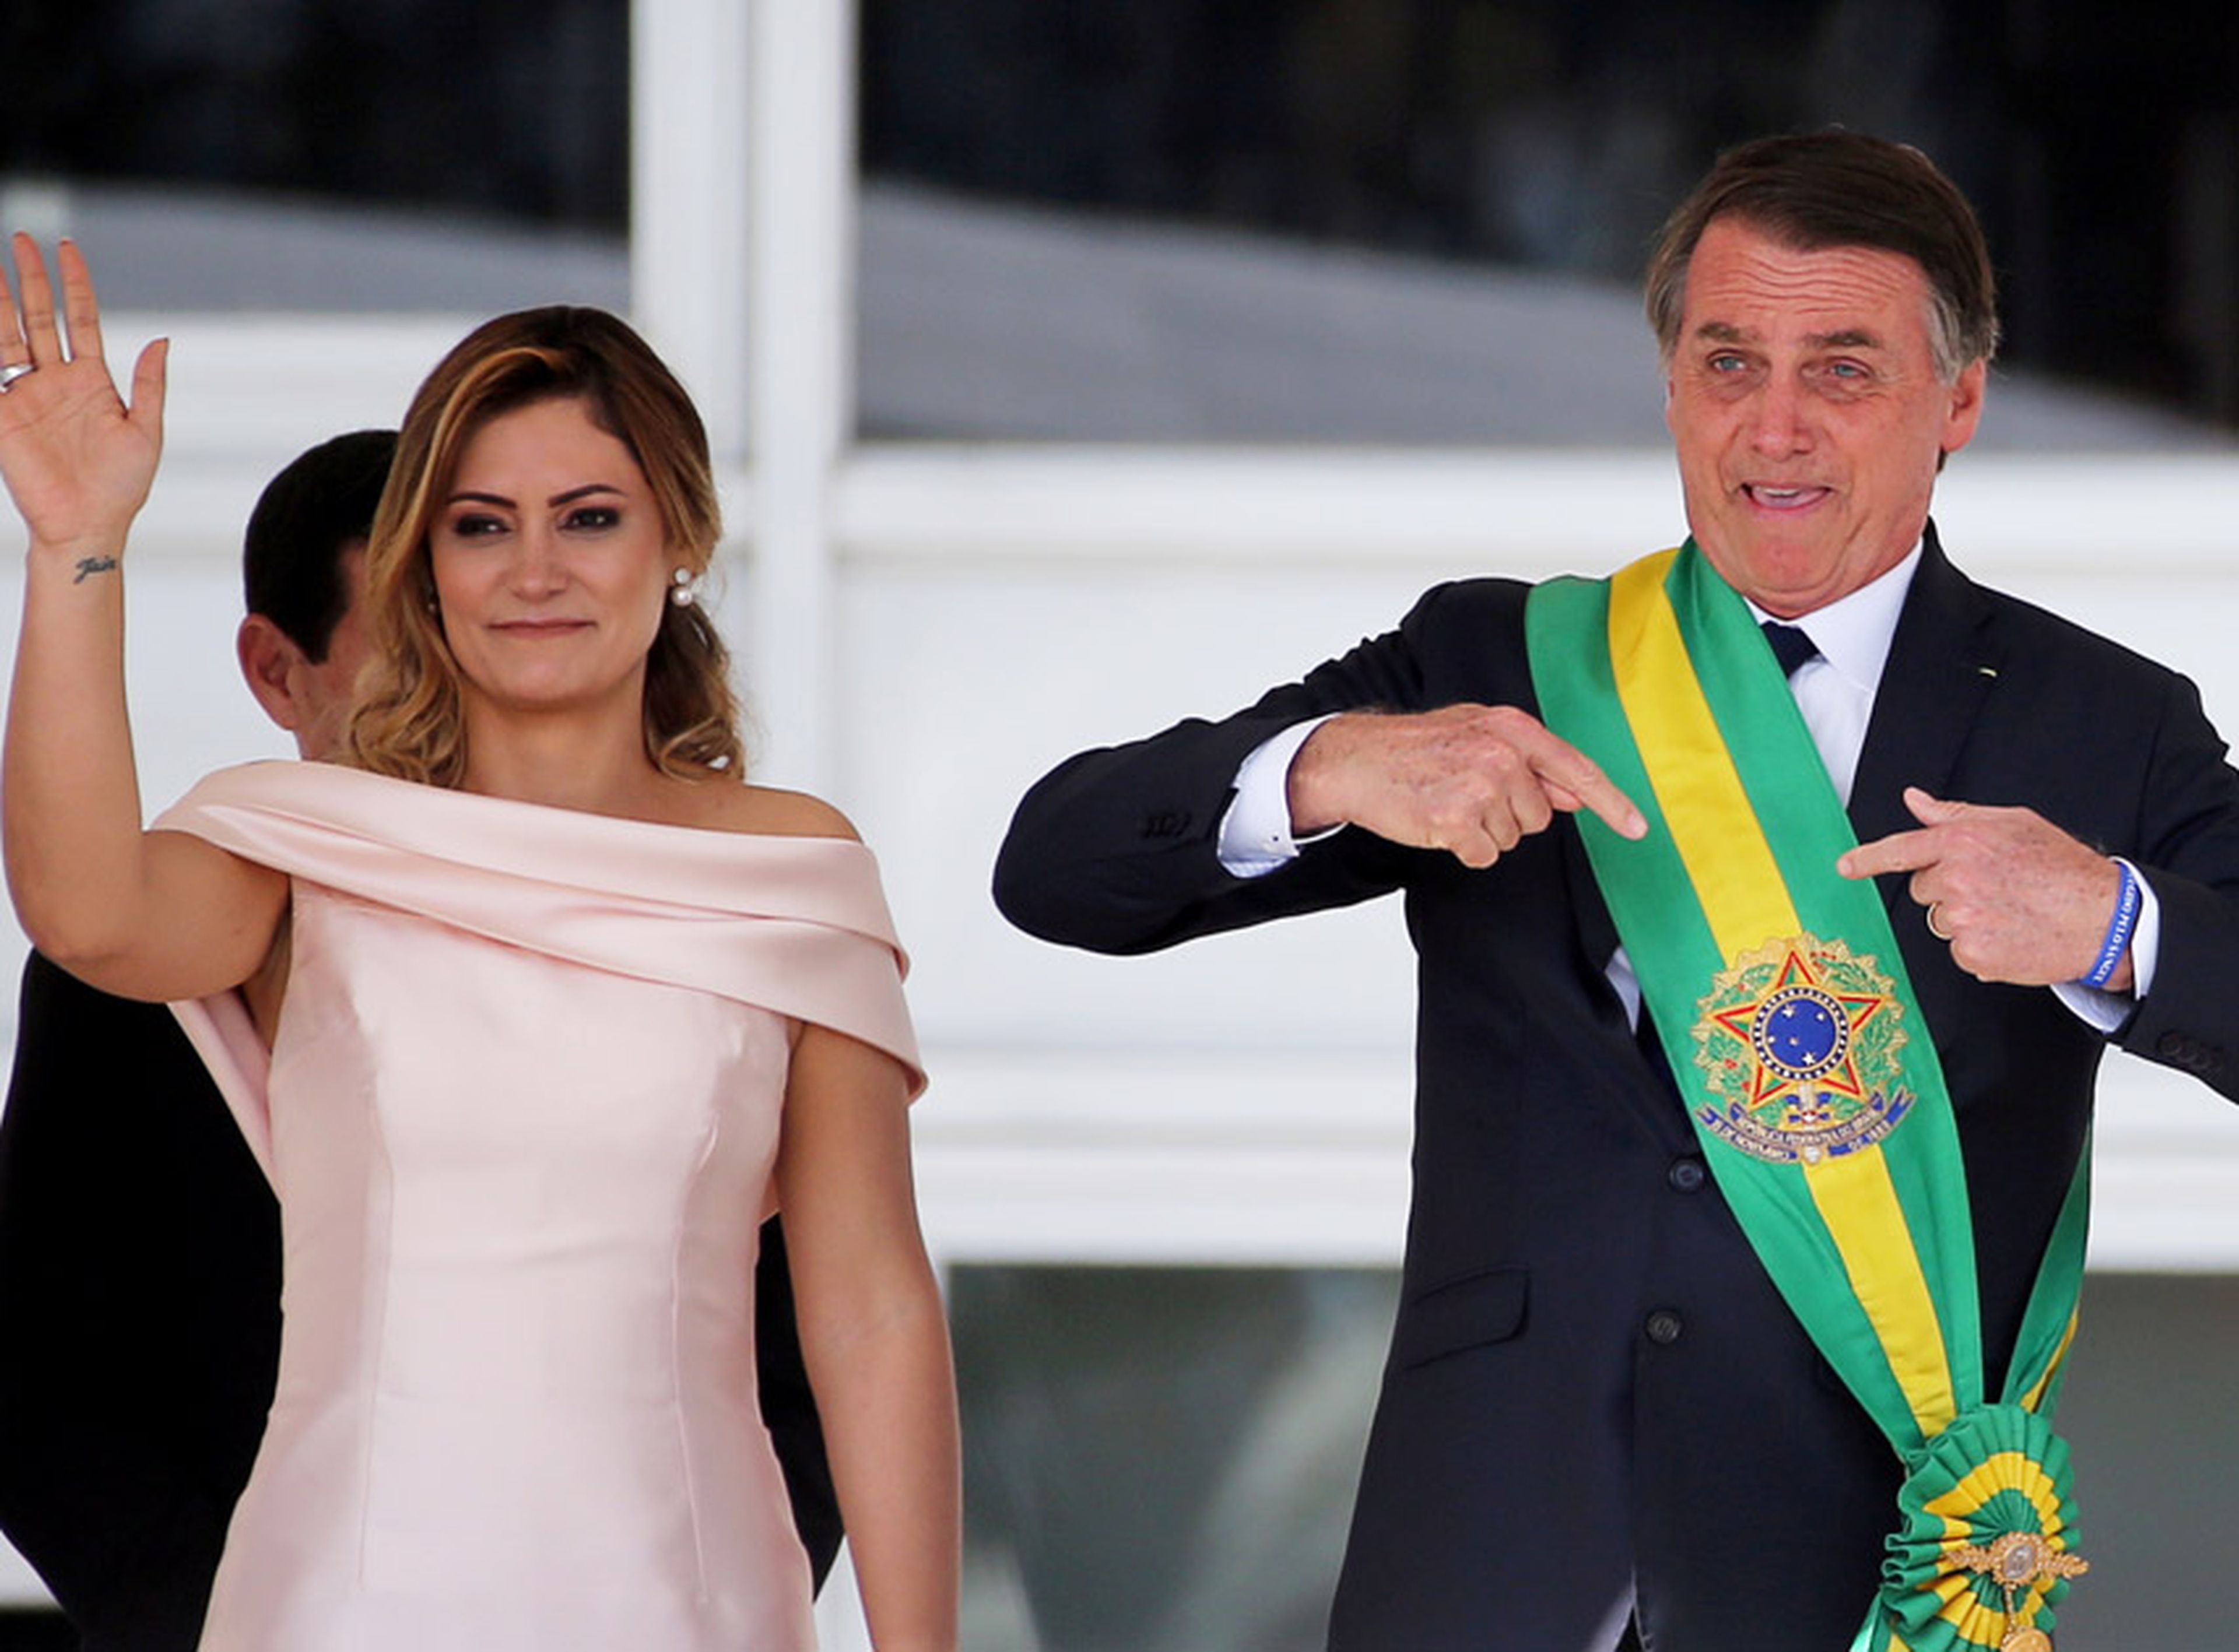 Jair Bolsonaro en el momento de su toma de posesión como nuevo presidente de Brasil